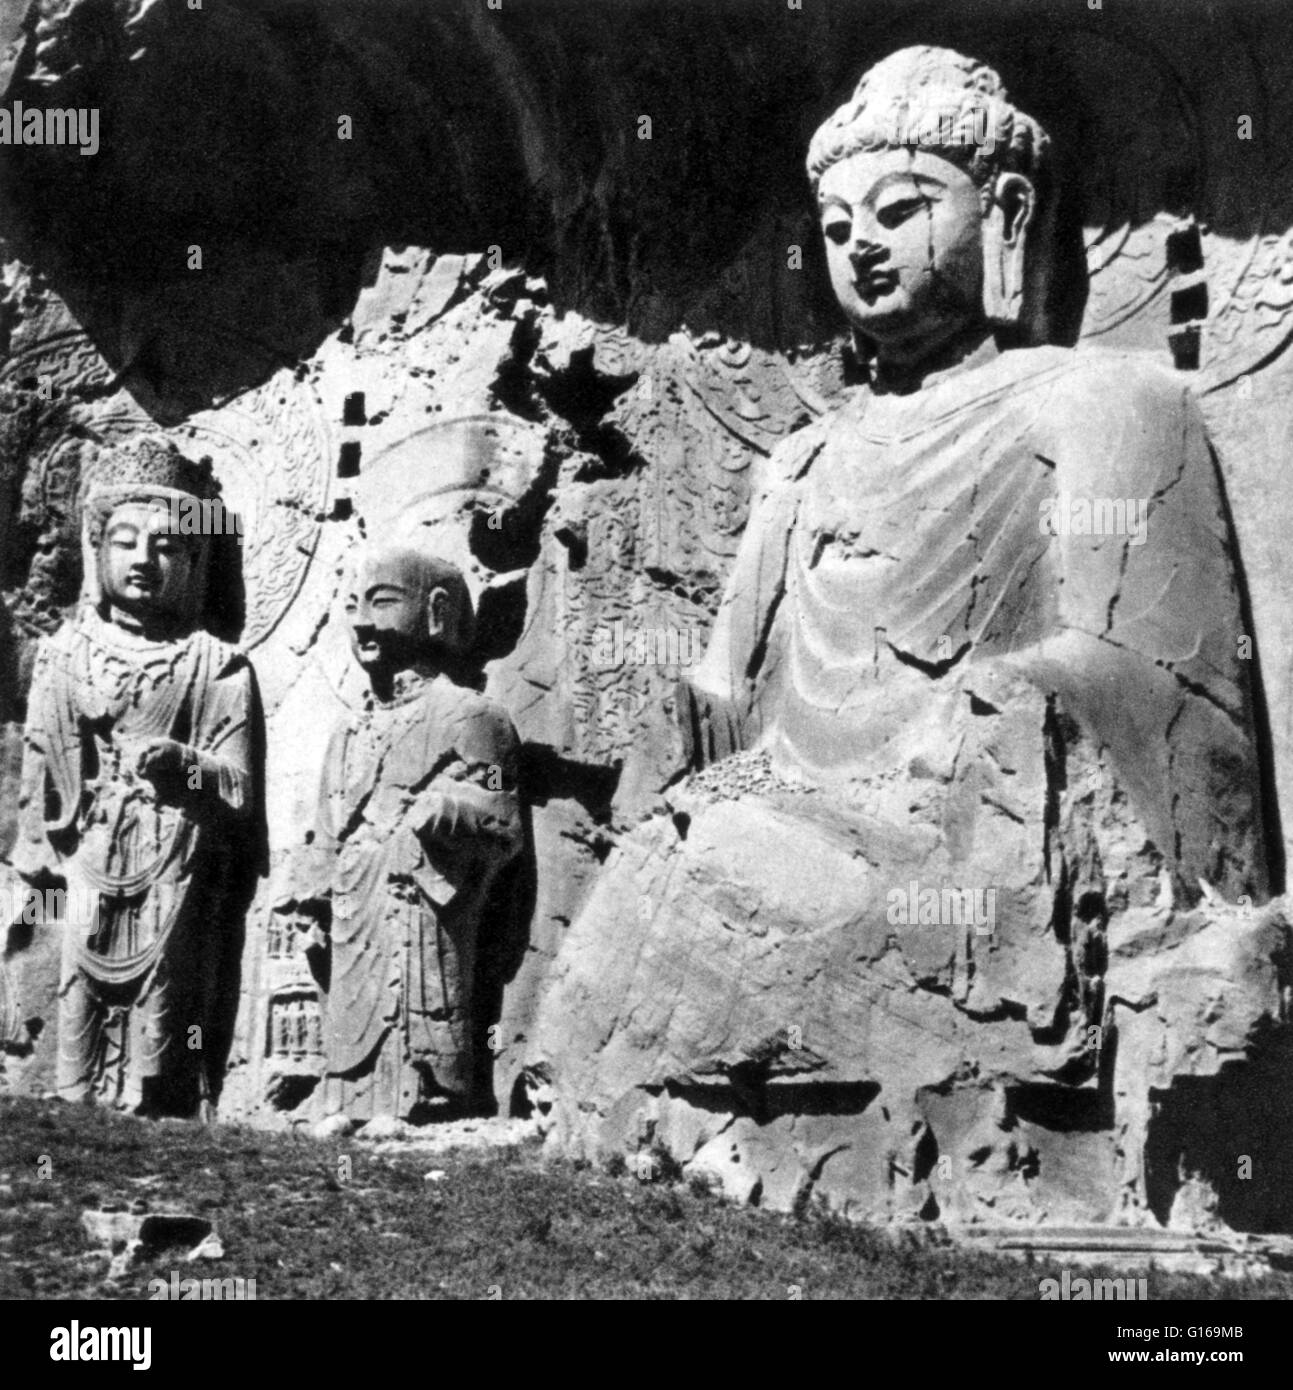 Fengxian, Feng Xian Si o Li Zhi grotta è l'antenato adorando grotta, che è il più grande di tutte le grotte scolpite sulla West Hill costruita tra il 672 e 676 per l'Imperatrice Wu Zetian. Le sculture sono sosteneva di essere il massimo della perfezione architettonica della dinastia Tang. Il santuario all'interno della grotta misura 127 piedi x 115 piedi . È la più grande statua del Buddha a Le Grotte di Longmen. Delle nove grandi statue intagliate, altamente impressionante immagine del Buddha Vairocana è scolpita sulla parete posteriore della Fengxian. L'immagine è 57 piedi alta. Un iscrizione alla base di questa figura dà come 676 Foto Stock